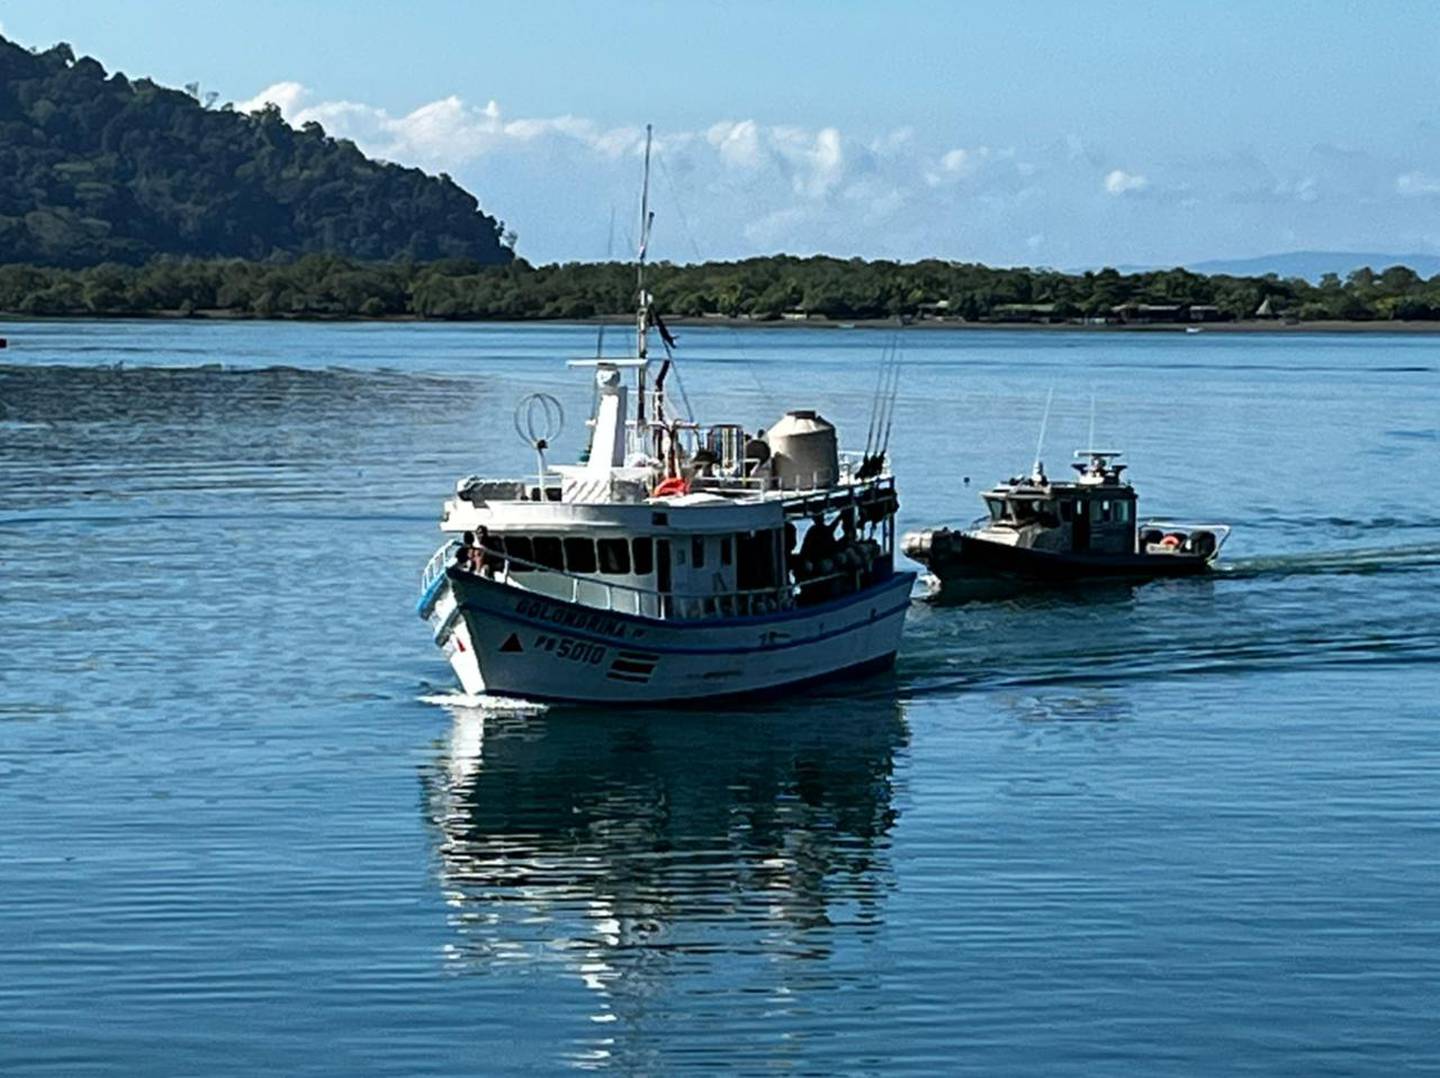 Una patrullera escoltó hasta Golfito a la embarcación Golondrina, detenida con droga en aguas del Pacífico colombiano. Foto: suministrada por Andrés Garita.